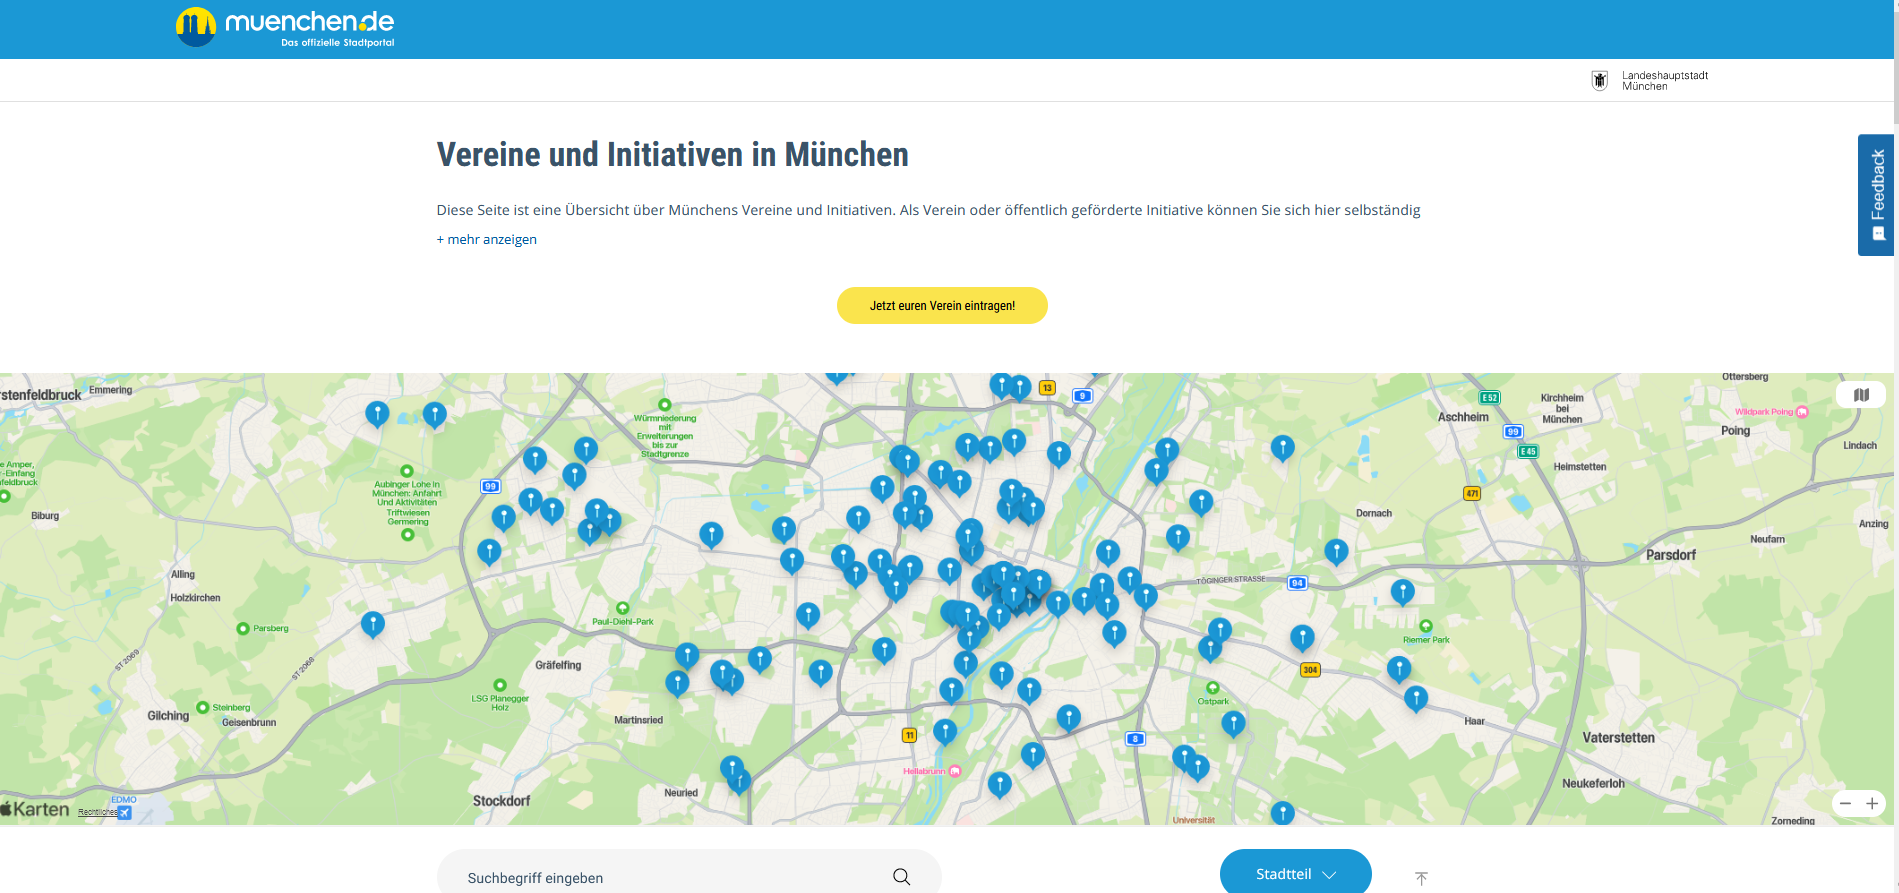 Online-Übersicht über Vereine und Initiativen in München